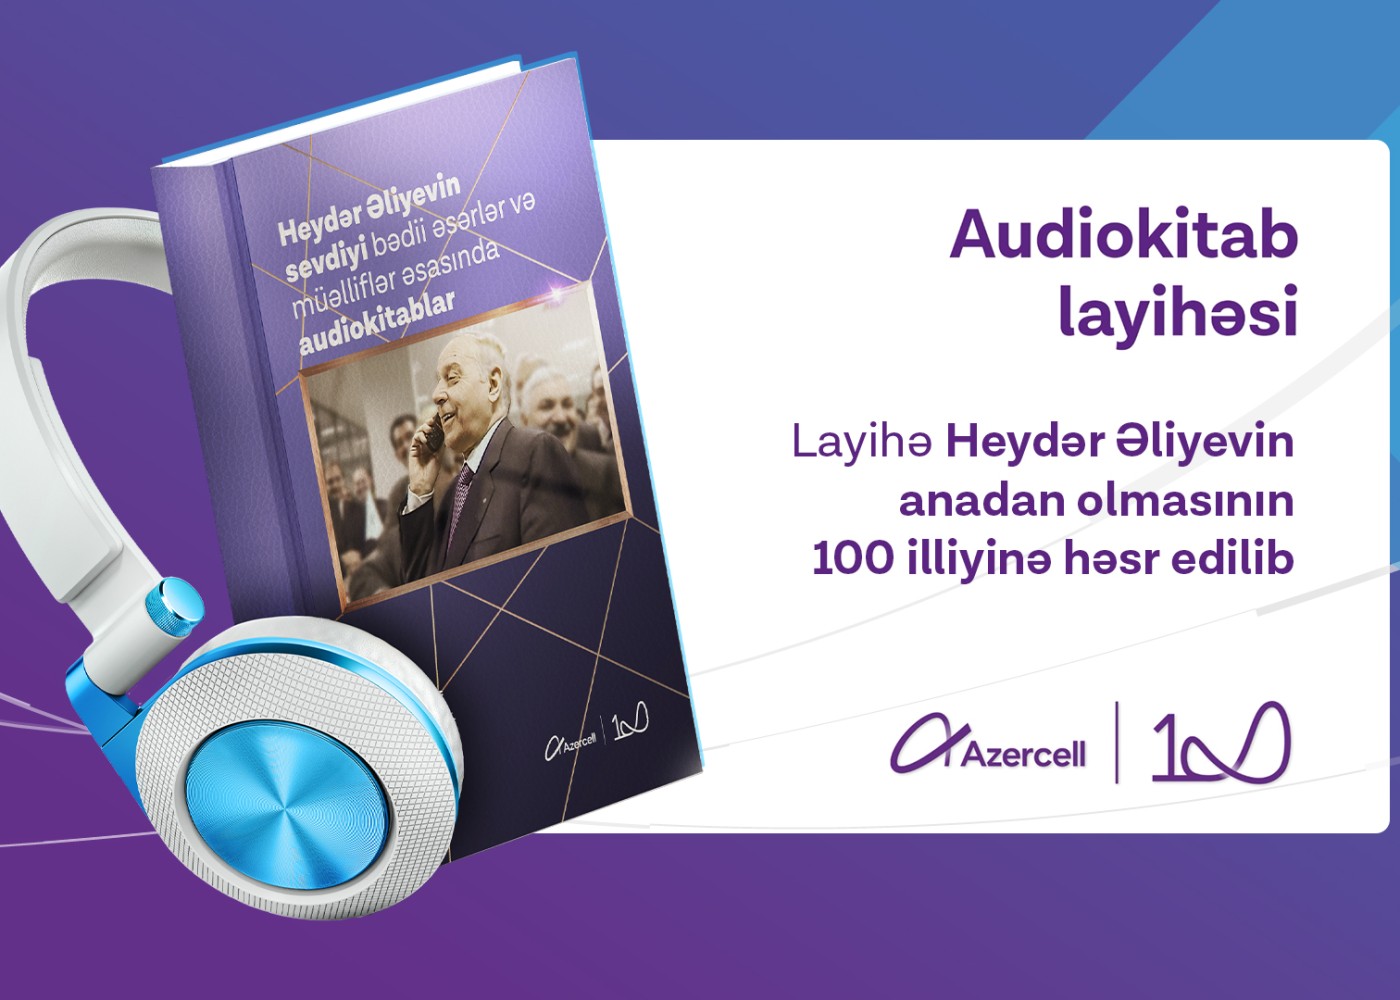 "Azercell” Heydər Əliyevin ən sevdiyi kitabları audio və elektron formatlarda təqdim edir -VİDEO